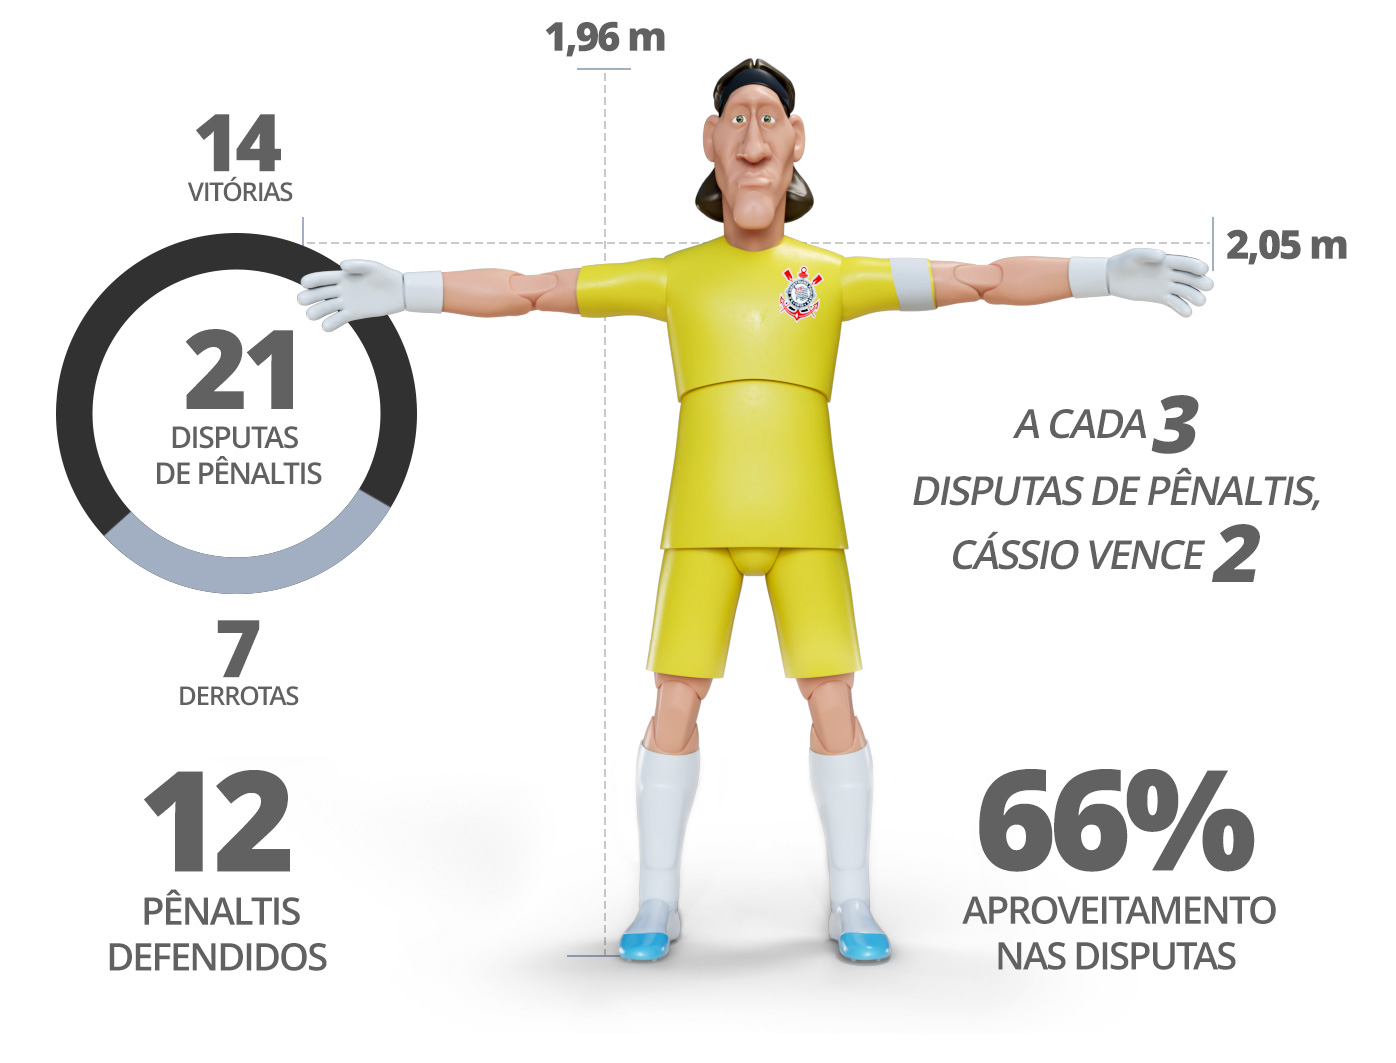 Dados do Cássio: 1,96m de altura, 2,05m de envergadura, 33 anos, no Corinthians desde 2012.